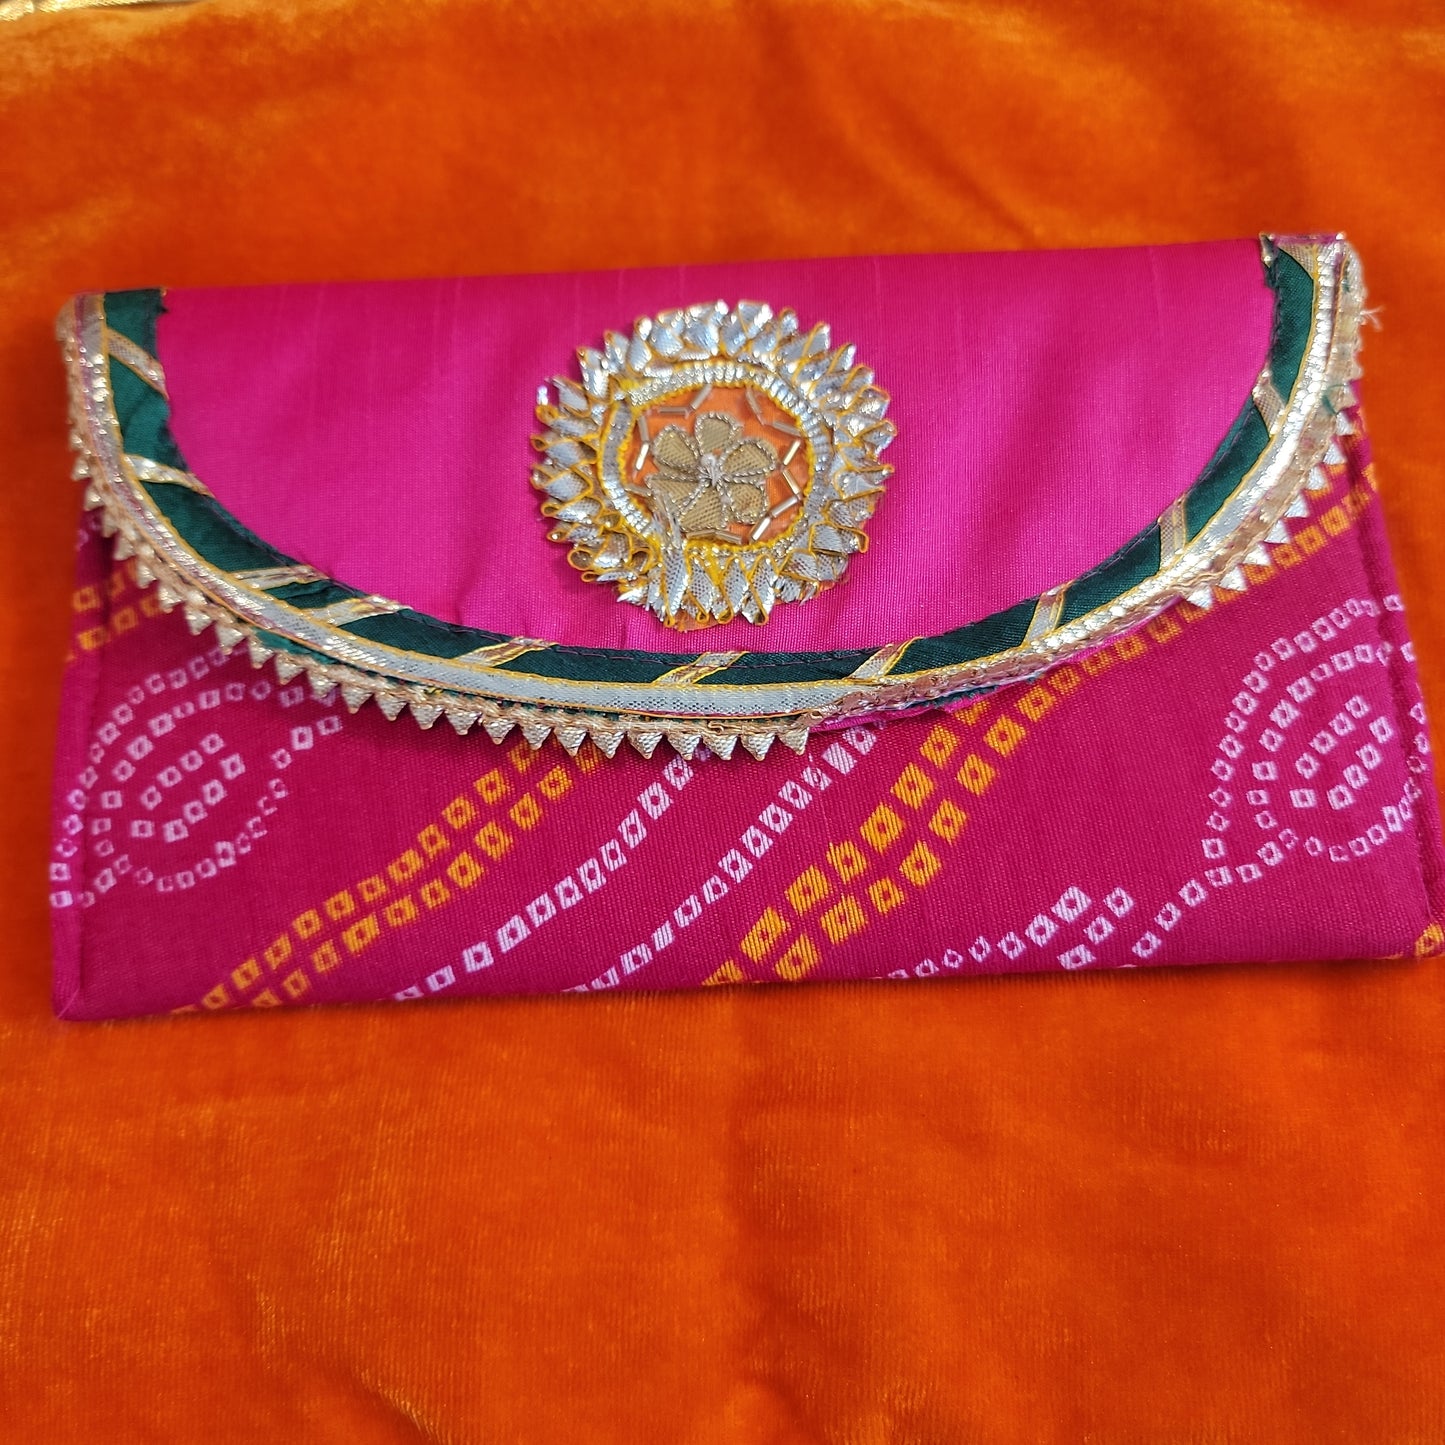 Badhani clutch (purse)